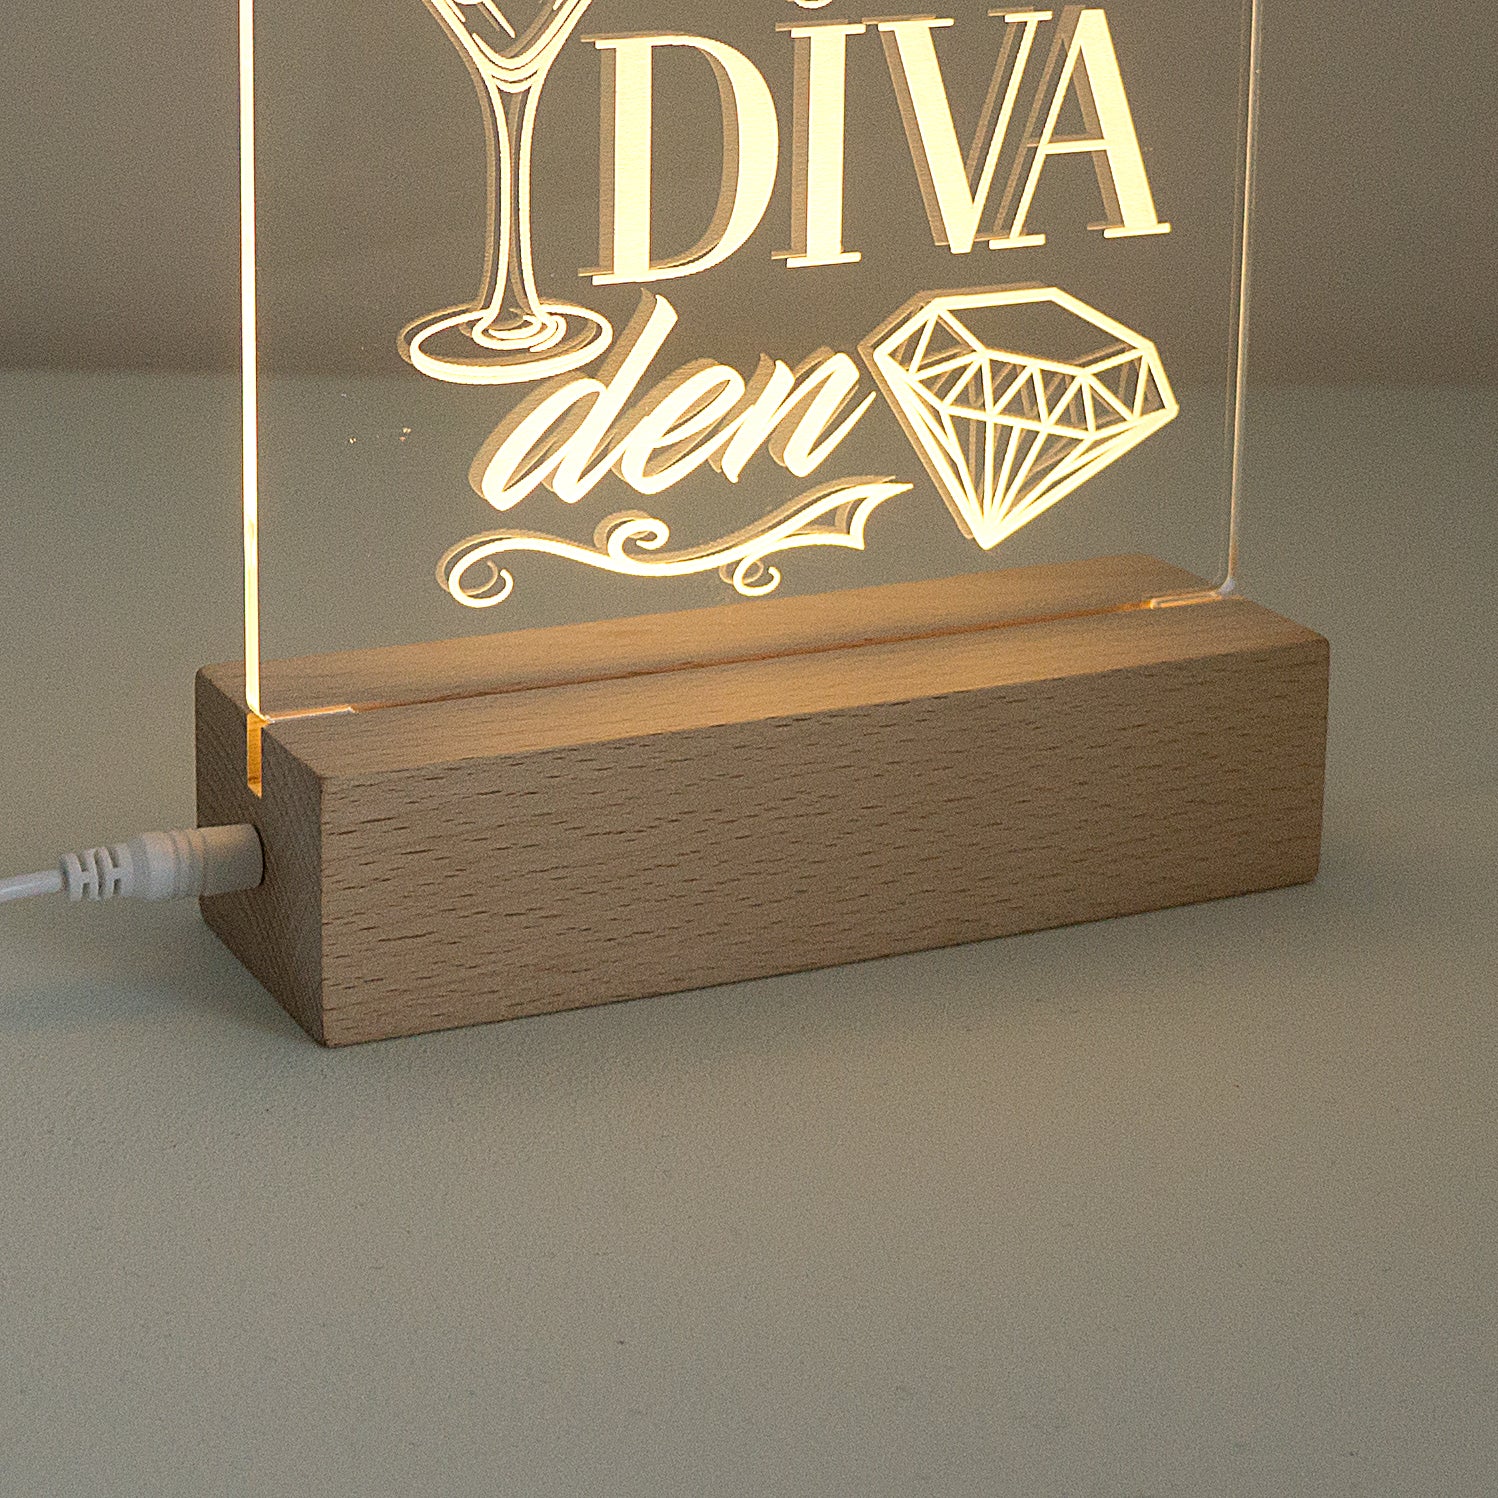 Diva Den LED sign